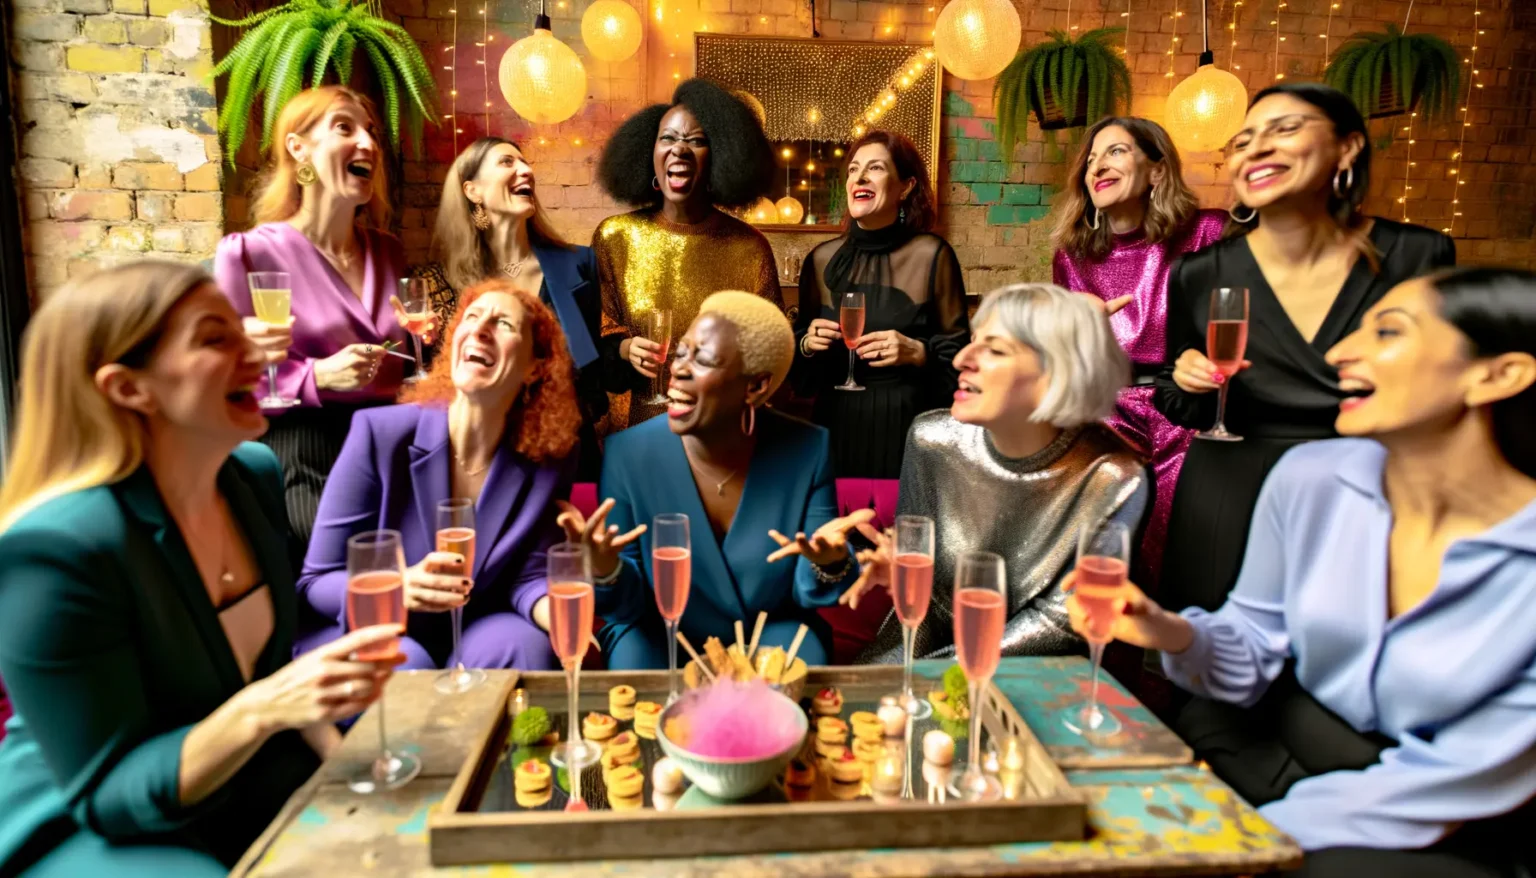 Eine Gruppe fröhlicher Frauen verschiedener Ethnien feiert zusammen in einem Raum mit Ziegelwand und festlicher Beleuchtung. Sie lachen und halten Sektgläser, während auf einem Tisch im Vordergrund Canapés und ein Glas mit rosa Zuckerwatte stehen. Die Frauen tragen festliche Kleidung in leuchtenden Farben und schimmernden Stoffen.